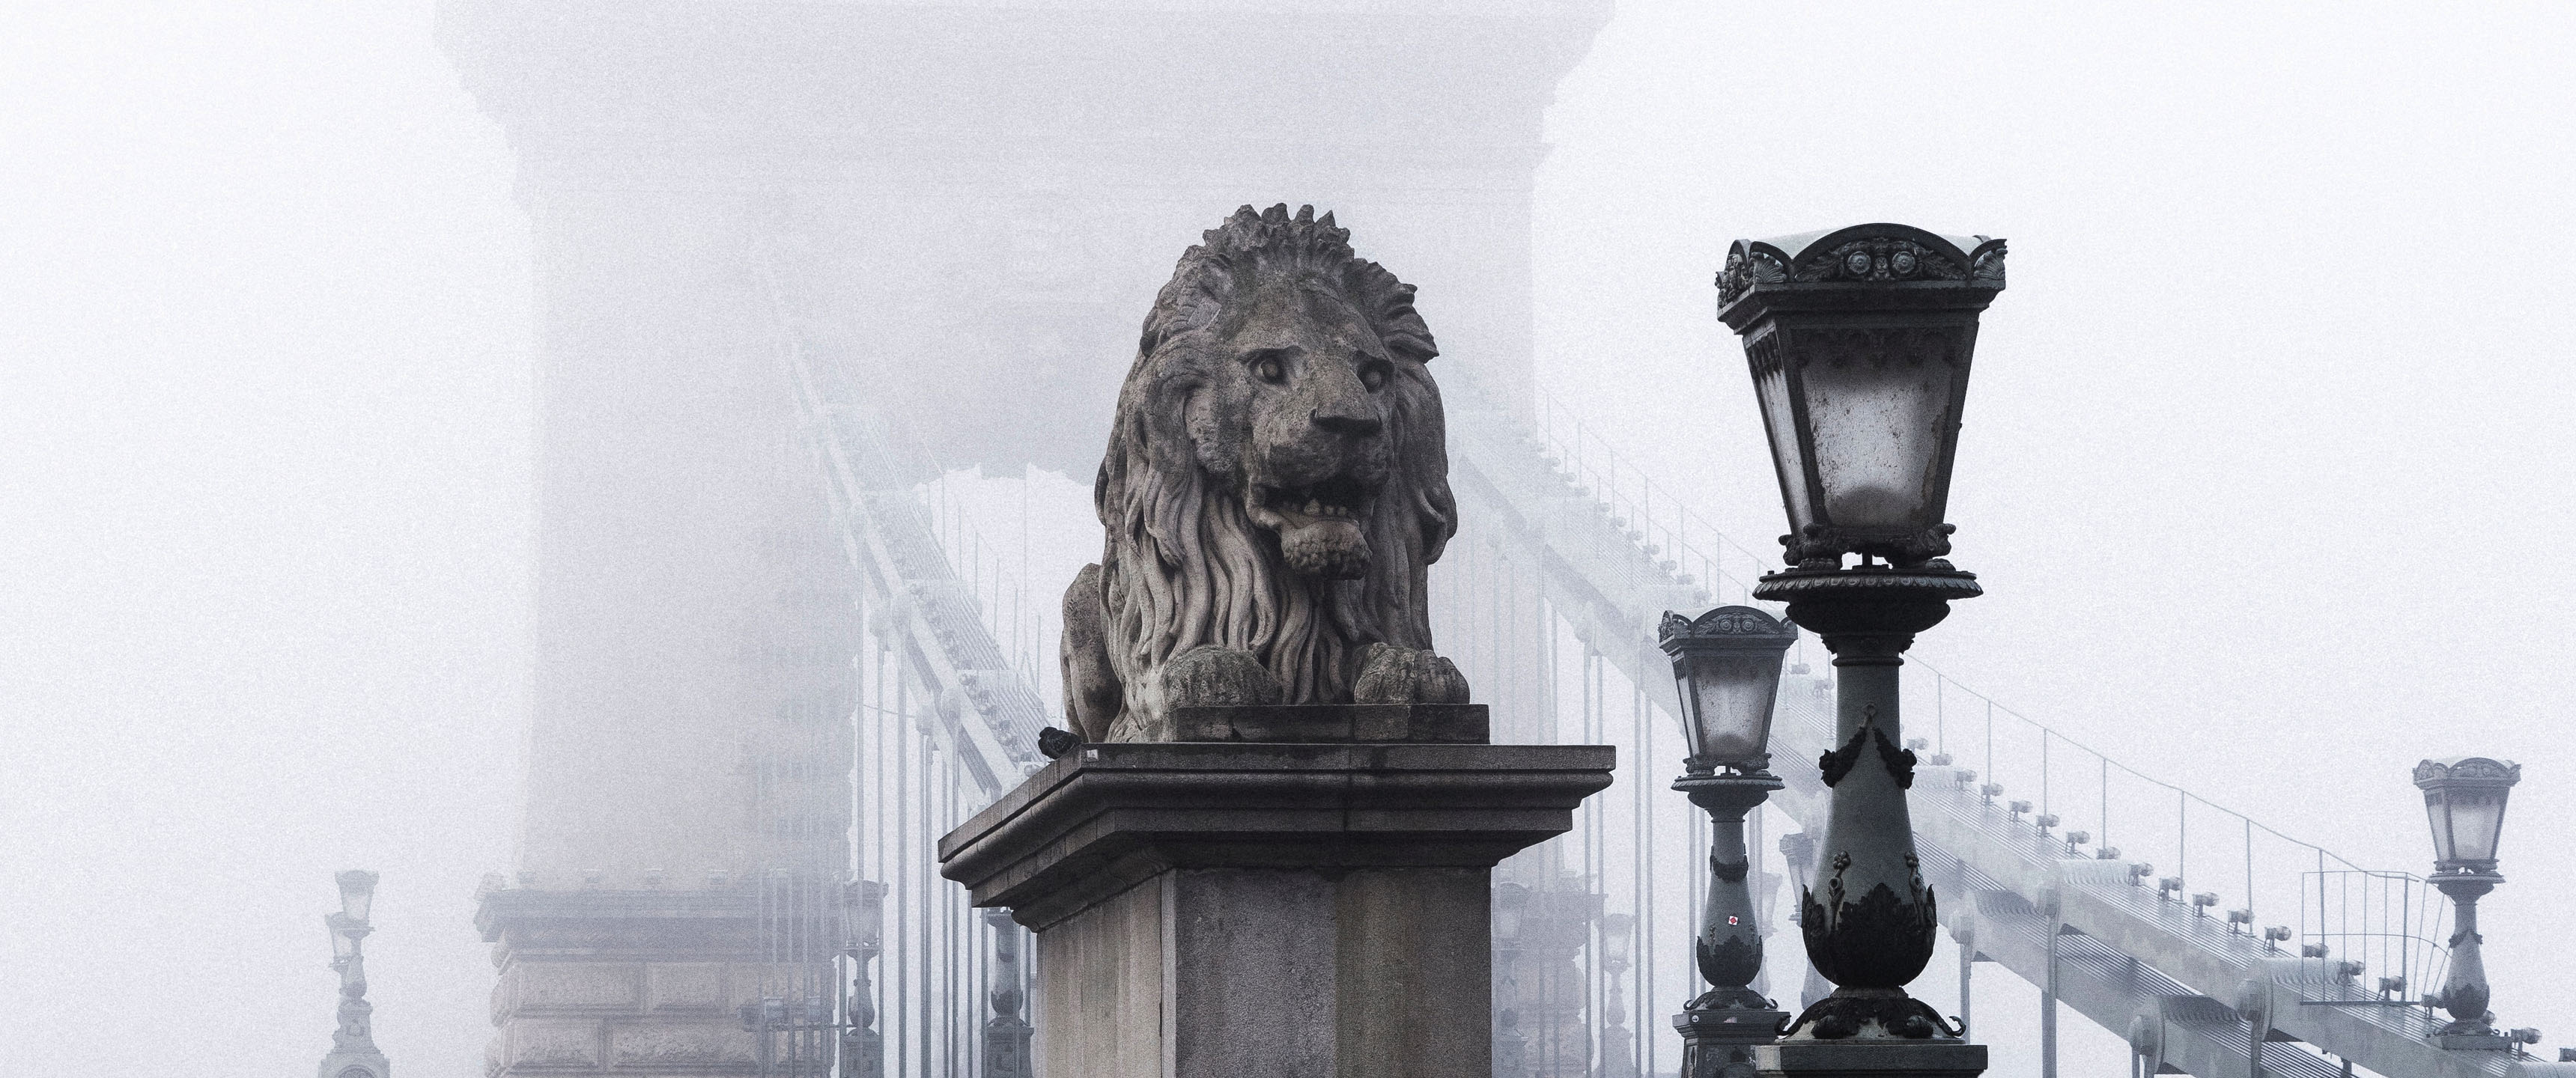 General 3440x1440 cityscape lion statue mist bridge